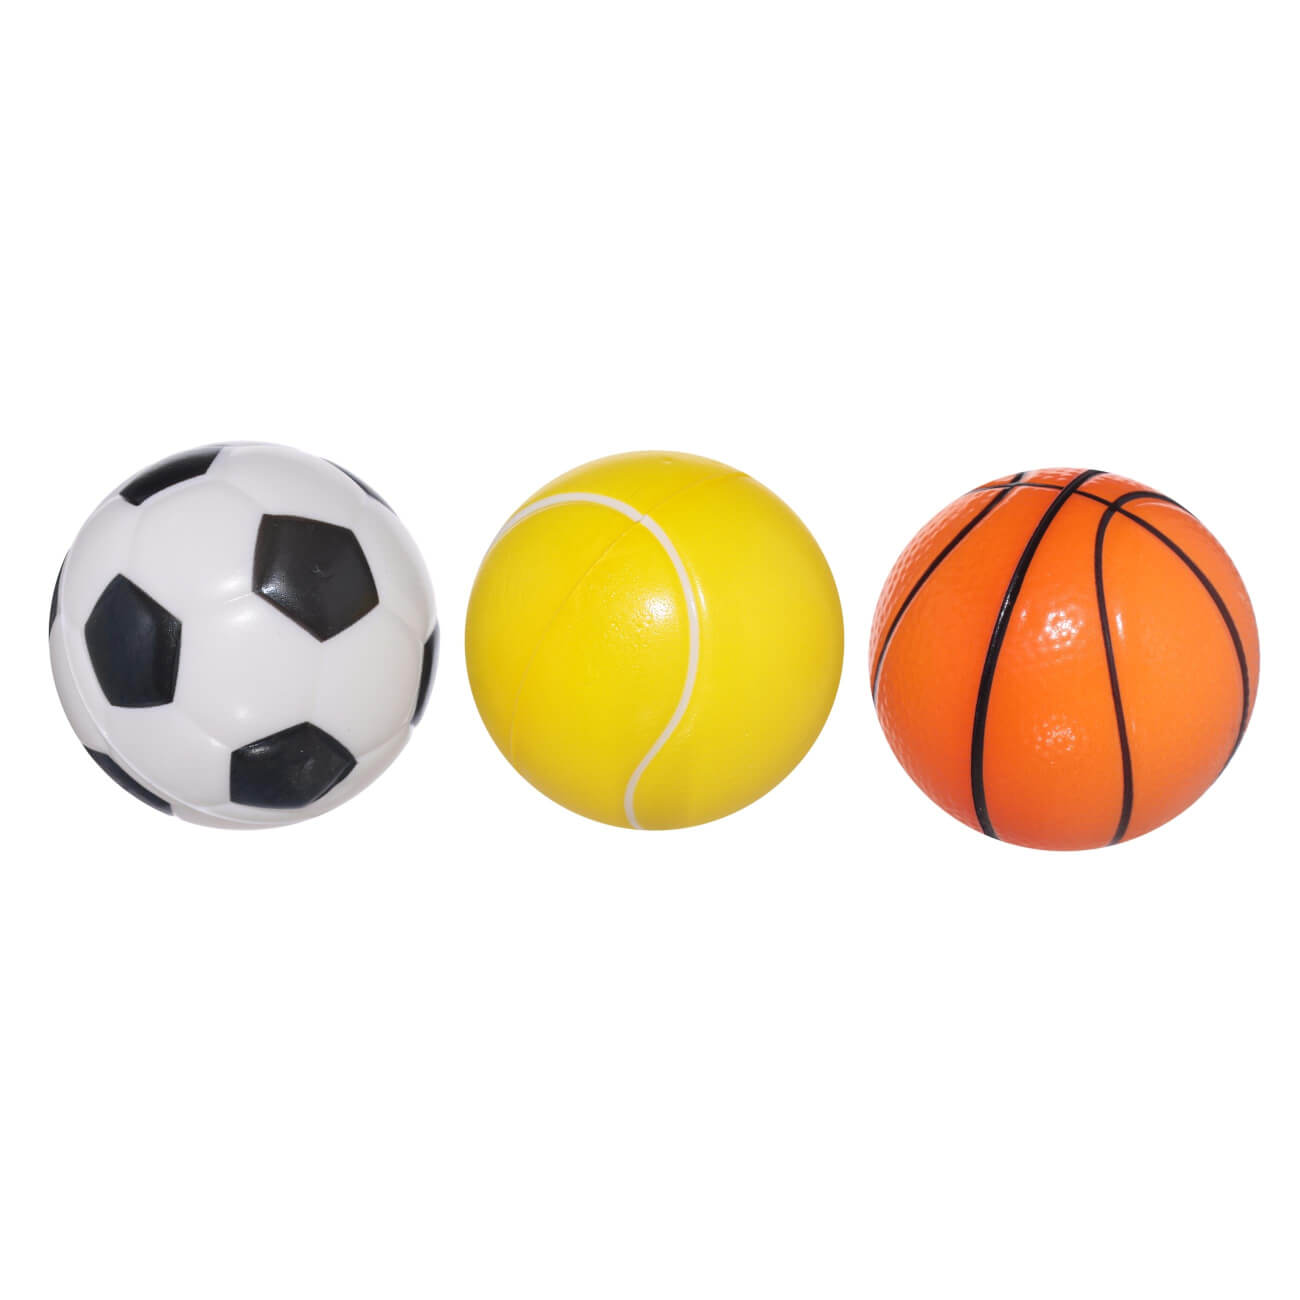 Мяч, 6 см, 3 шт, полиуретан, цветной, Футбол/Баскетбол/Теннис, Game 1pc баскетбол наколенники бег велоспорт коленная подставка футбол коленная скобка поддержка защитник икроножные рукава